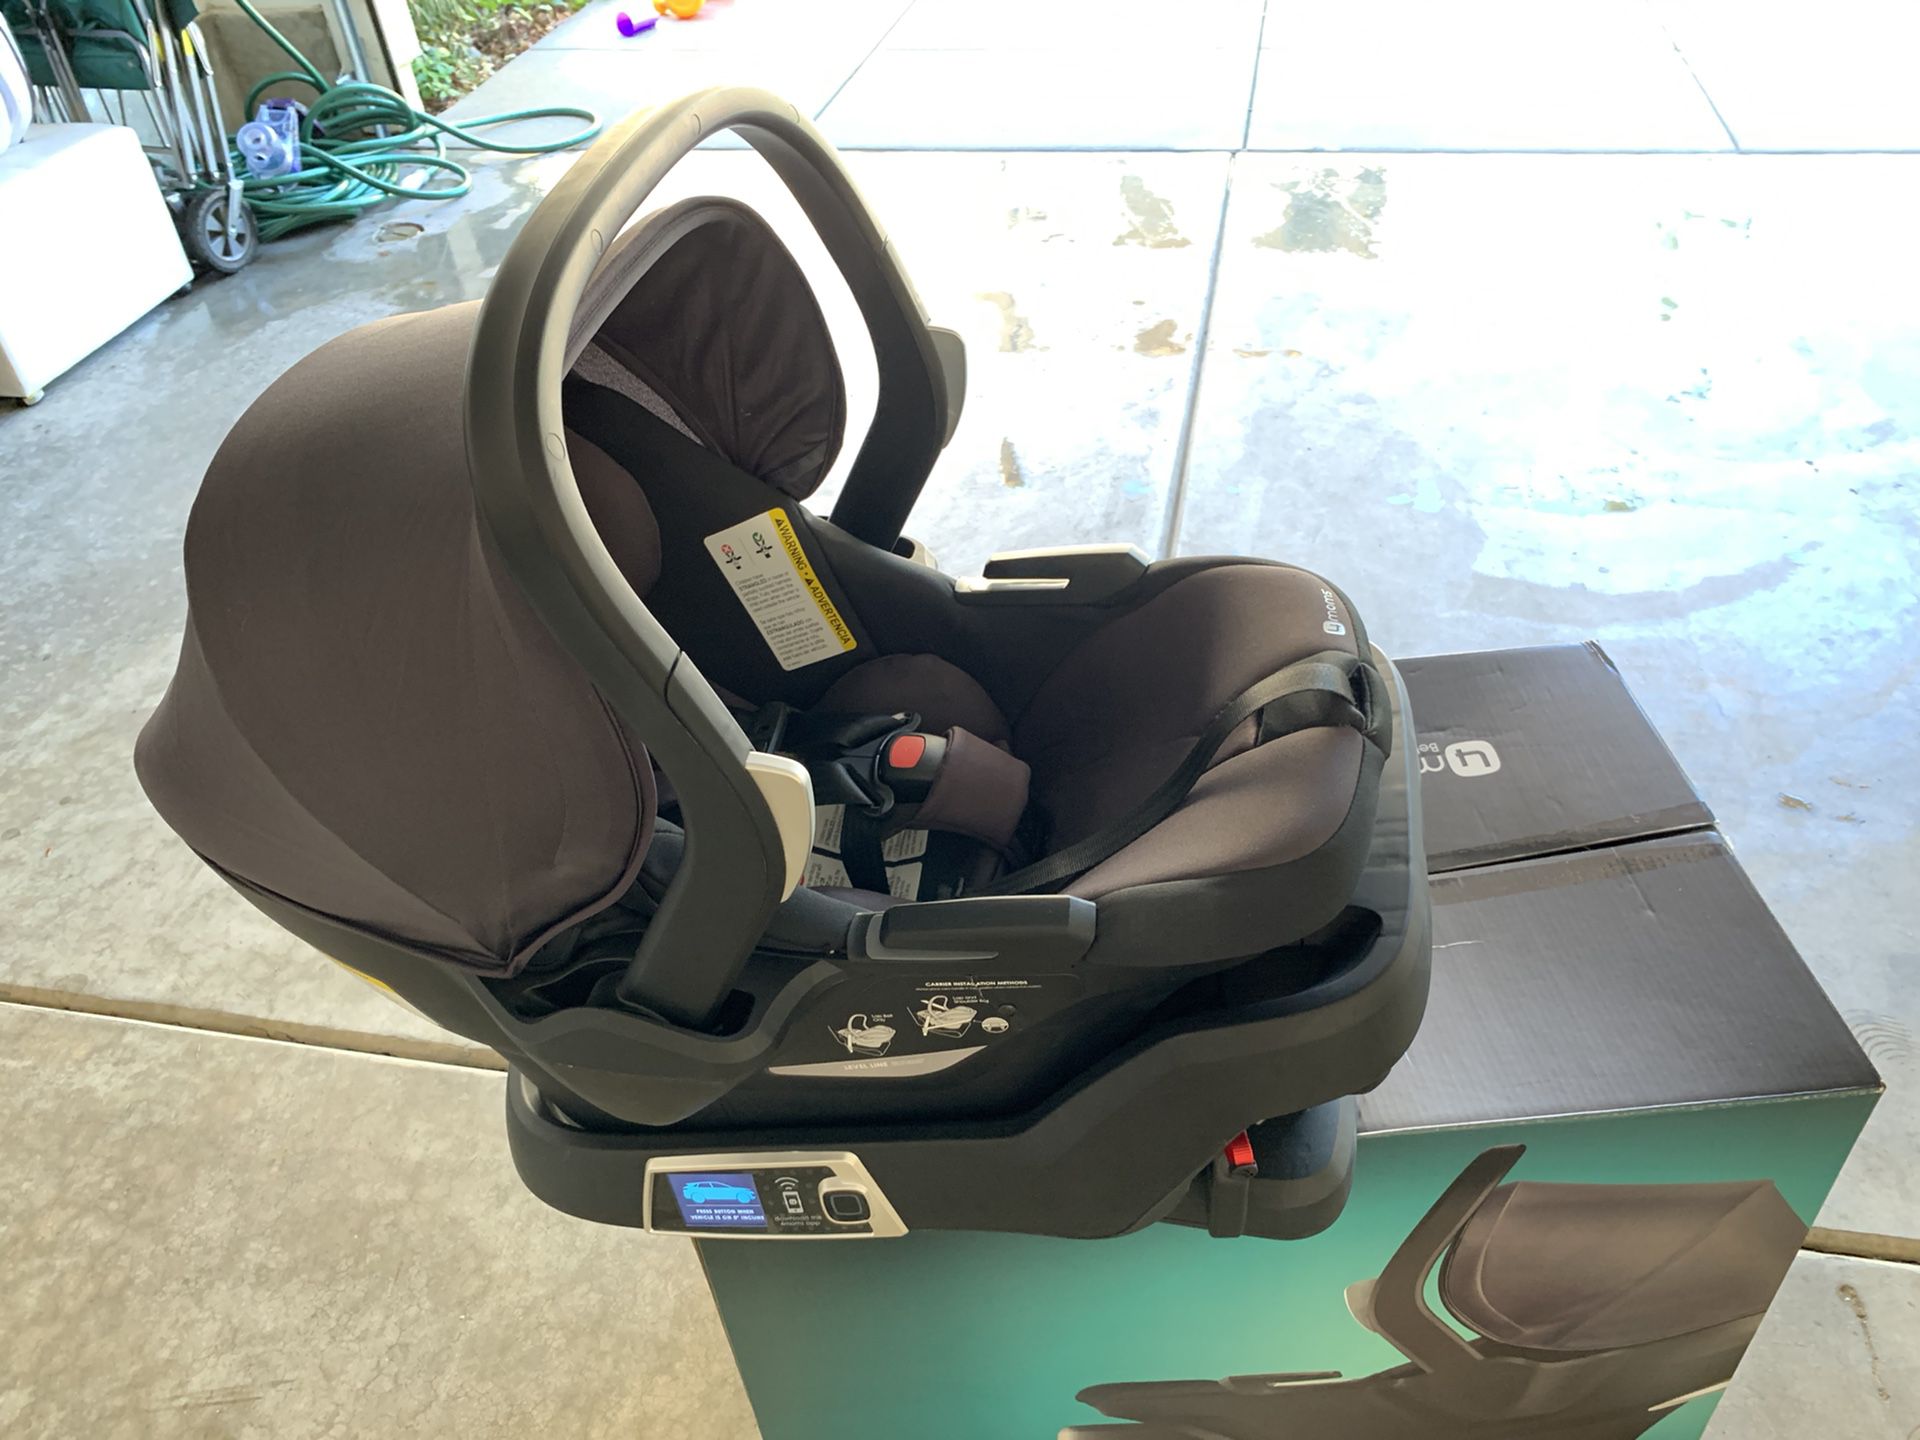 4moms self-installing car seat